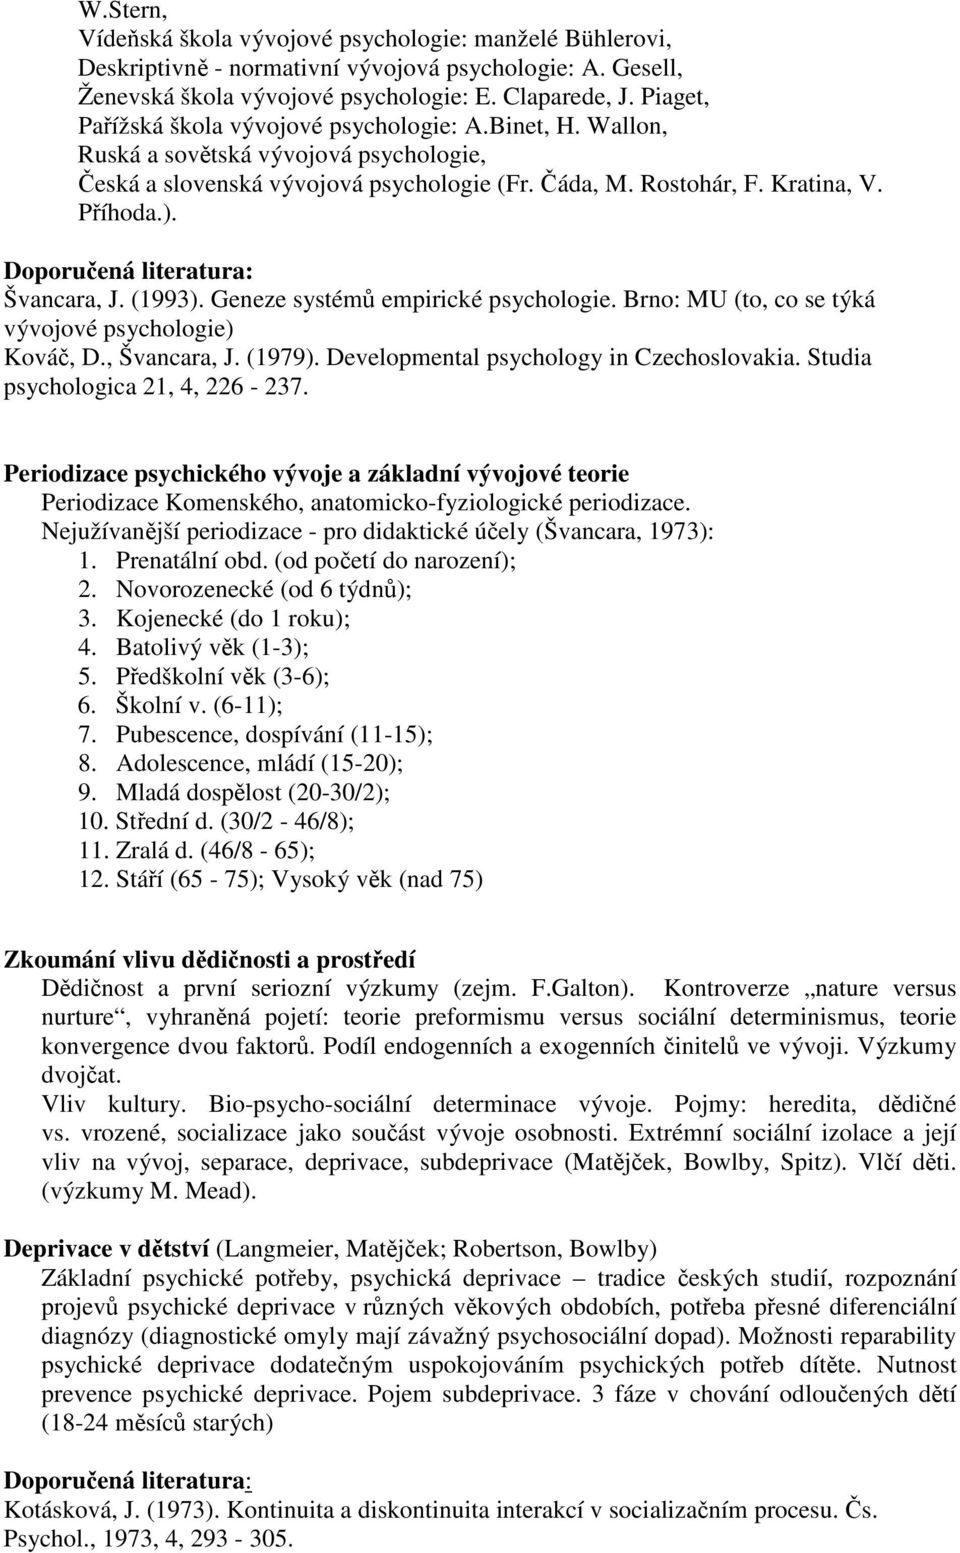 (1993). Geneze systém empirické psychologie. Brno: MU (to, co se týká vývojové psychologie) Ková, D., Švancara, J. (1979). Developmental psychology in Czechoslovakia.